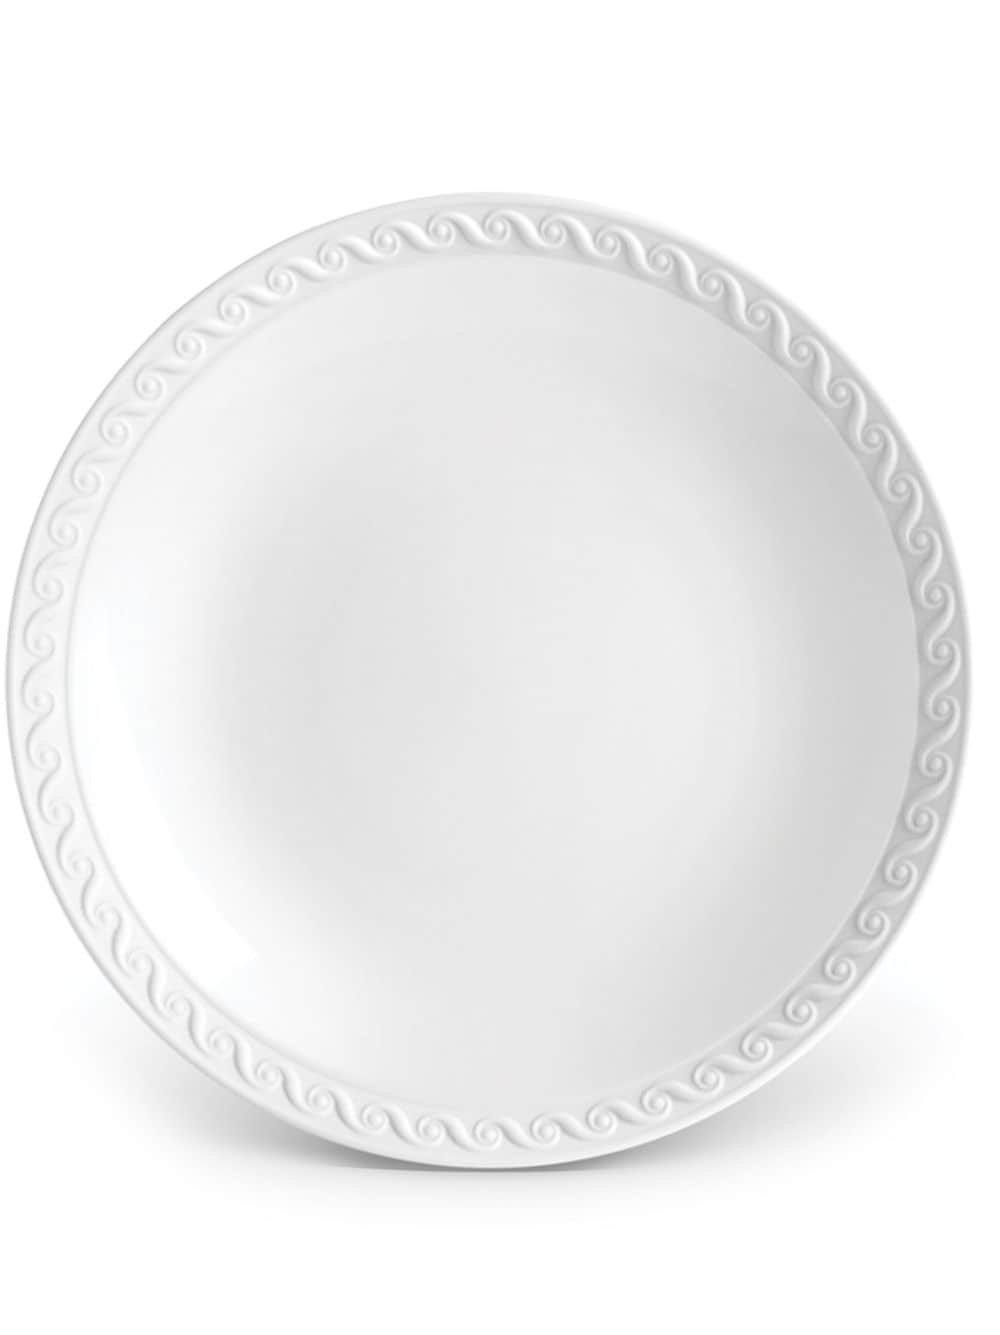 L'Objet Neptune Brot- und Butterteller aus Porzellan - Weiß von L'Objet